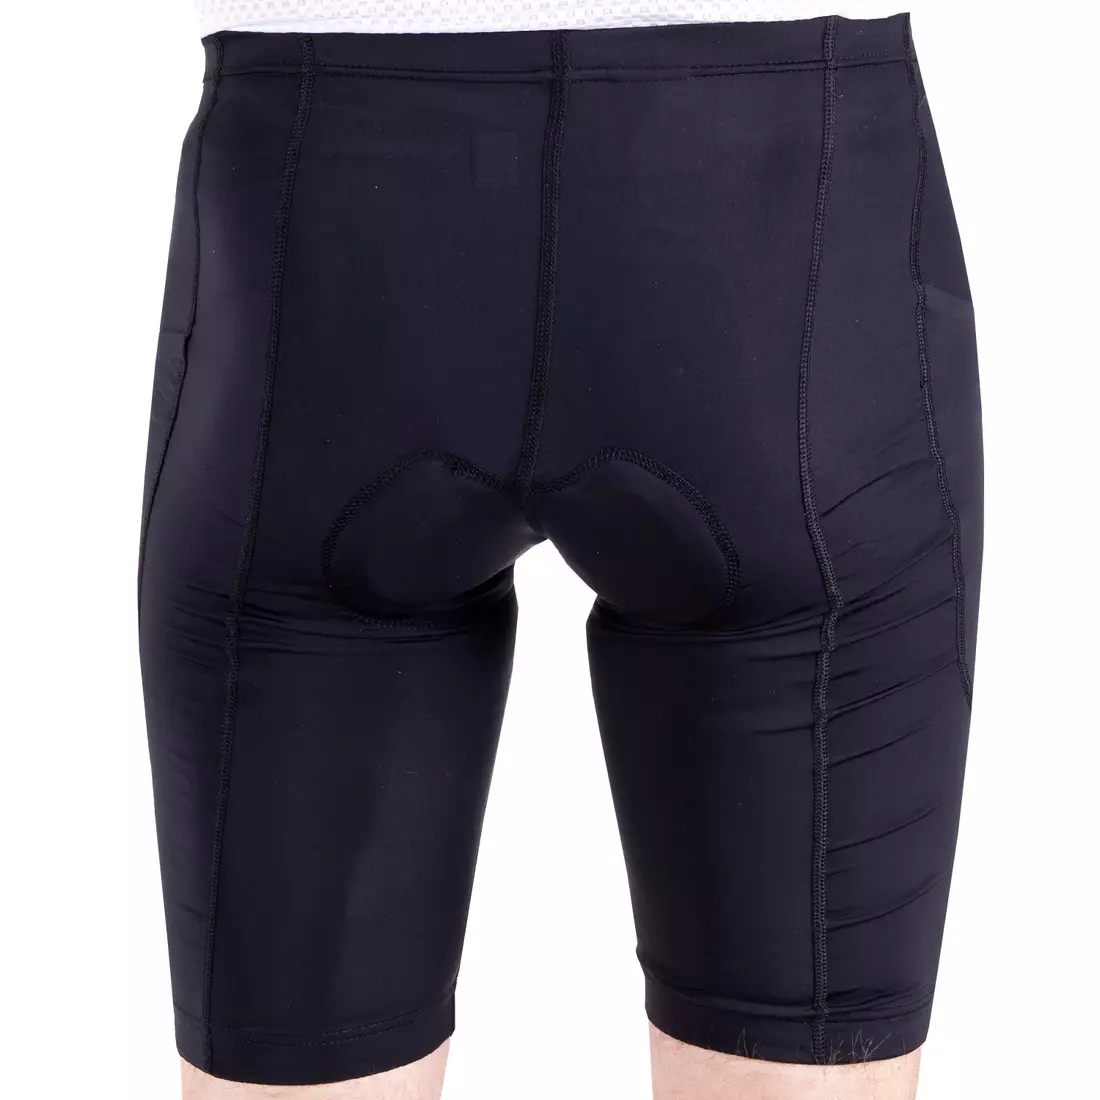 [Set] DEKO STYLE-0421 Men bike t-shirt, black + DEKO POCKET men's cycling shorts, black